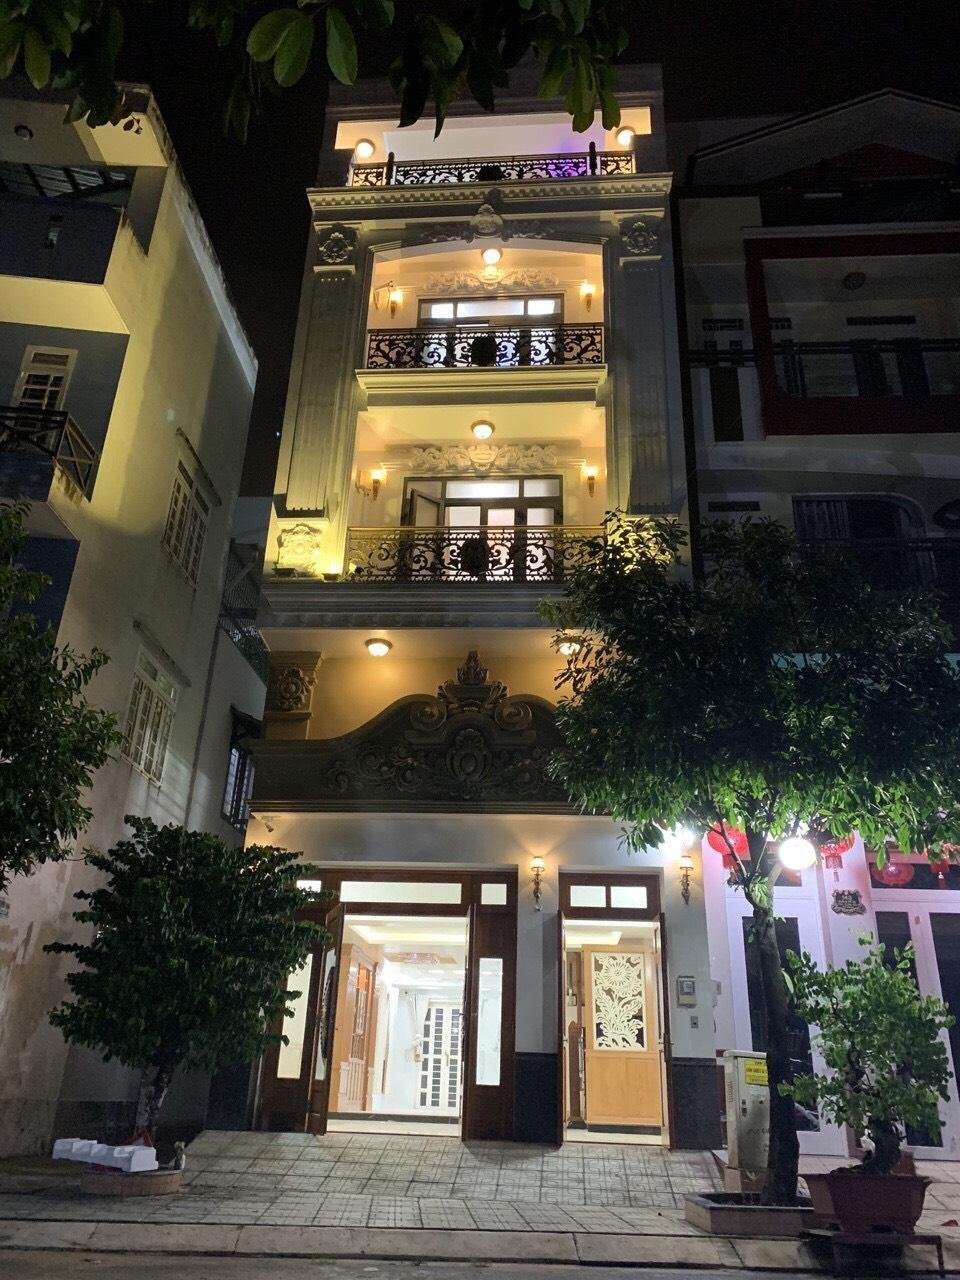 Cần chuyển nhà nhỏ hơn, bán nhà 3 tầng ngay TTTP, đường Đỗ Quang, Q.Thanh Khê